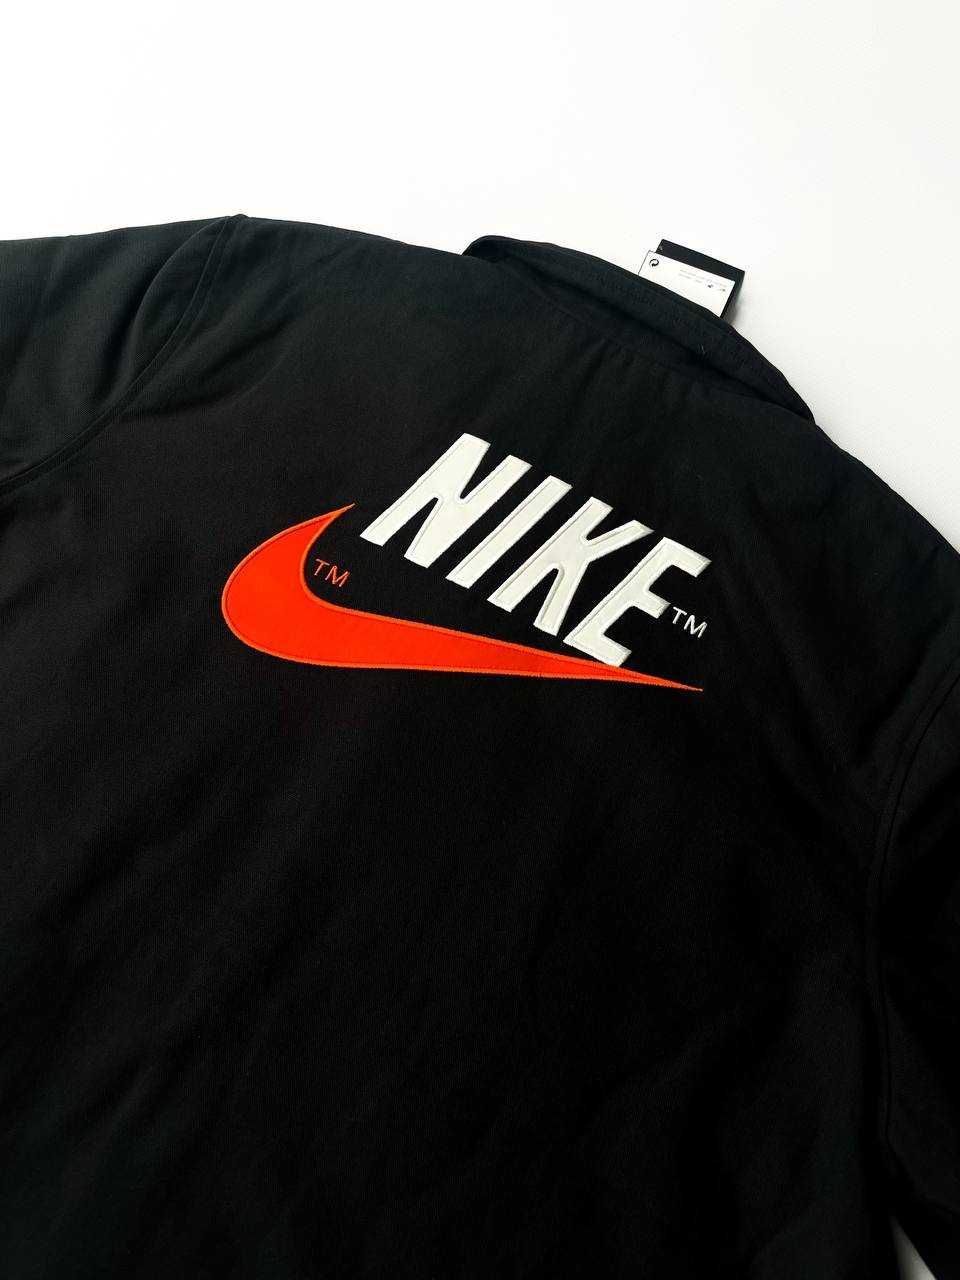 Оригінал! Чоловіча Куртка/Рубашка Nike (S/L) Нова з Бірками!